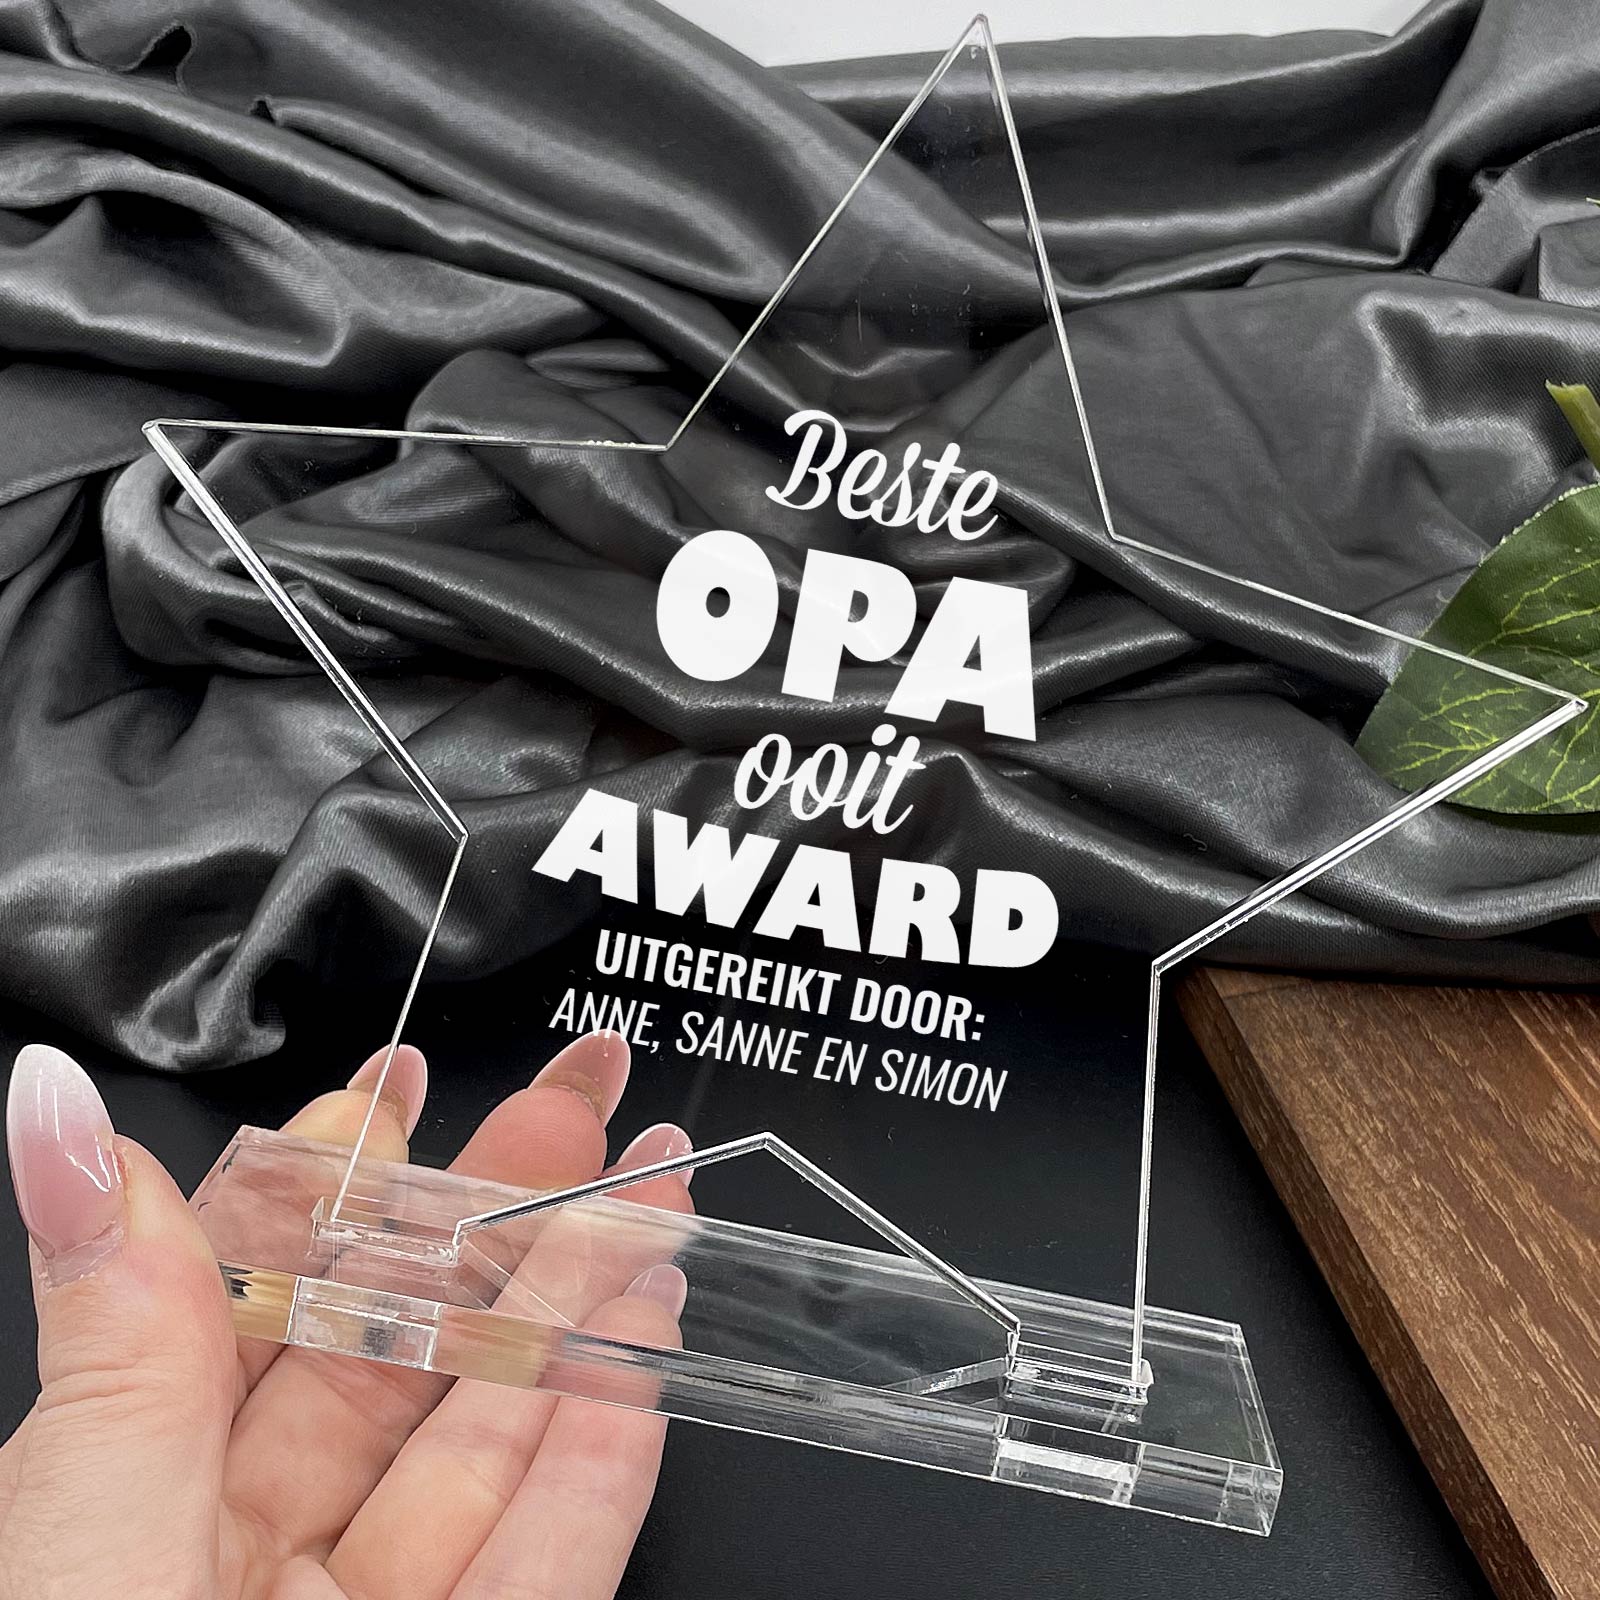 Beste Opa Ooit Award - Bella Mia